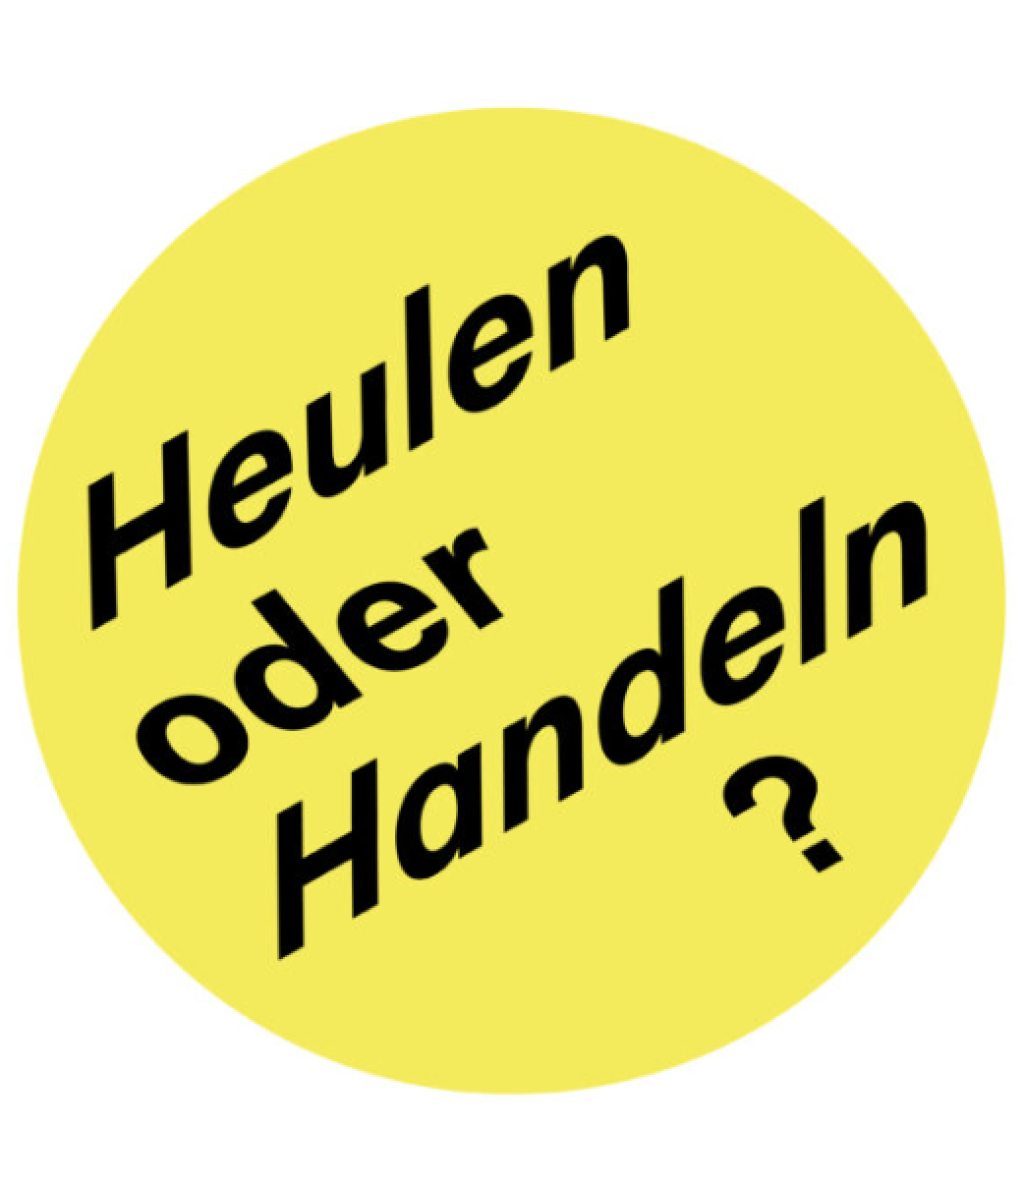 Logo des Podcasts "heulen oder handeln?". Gelber Kreis mit schwarzer Schrift.